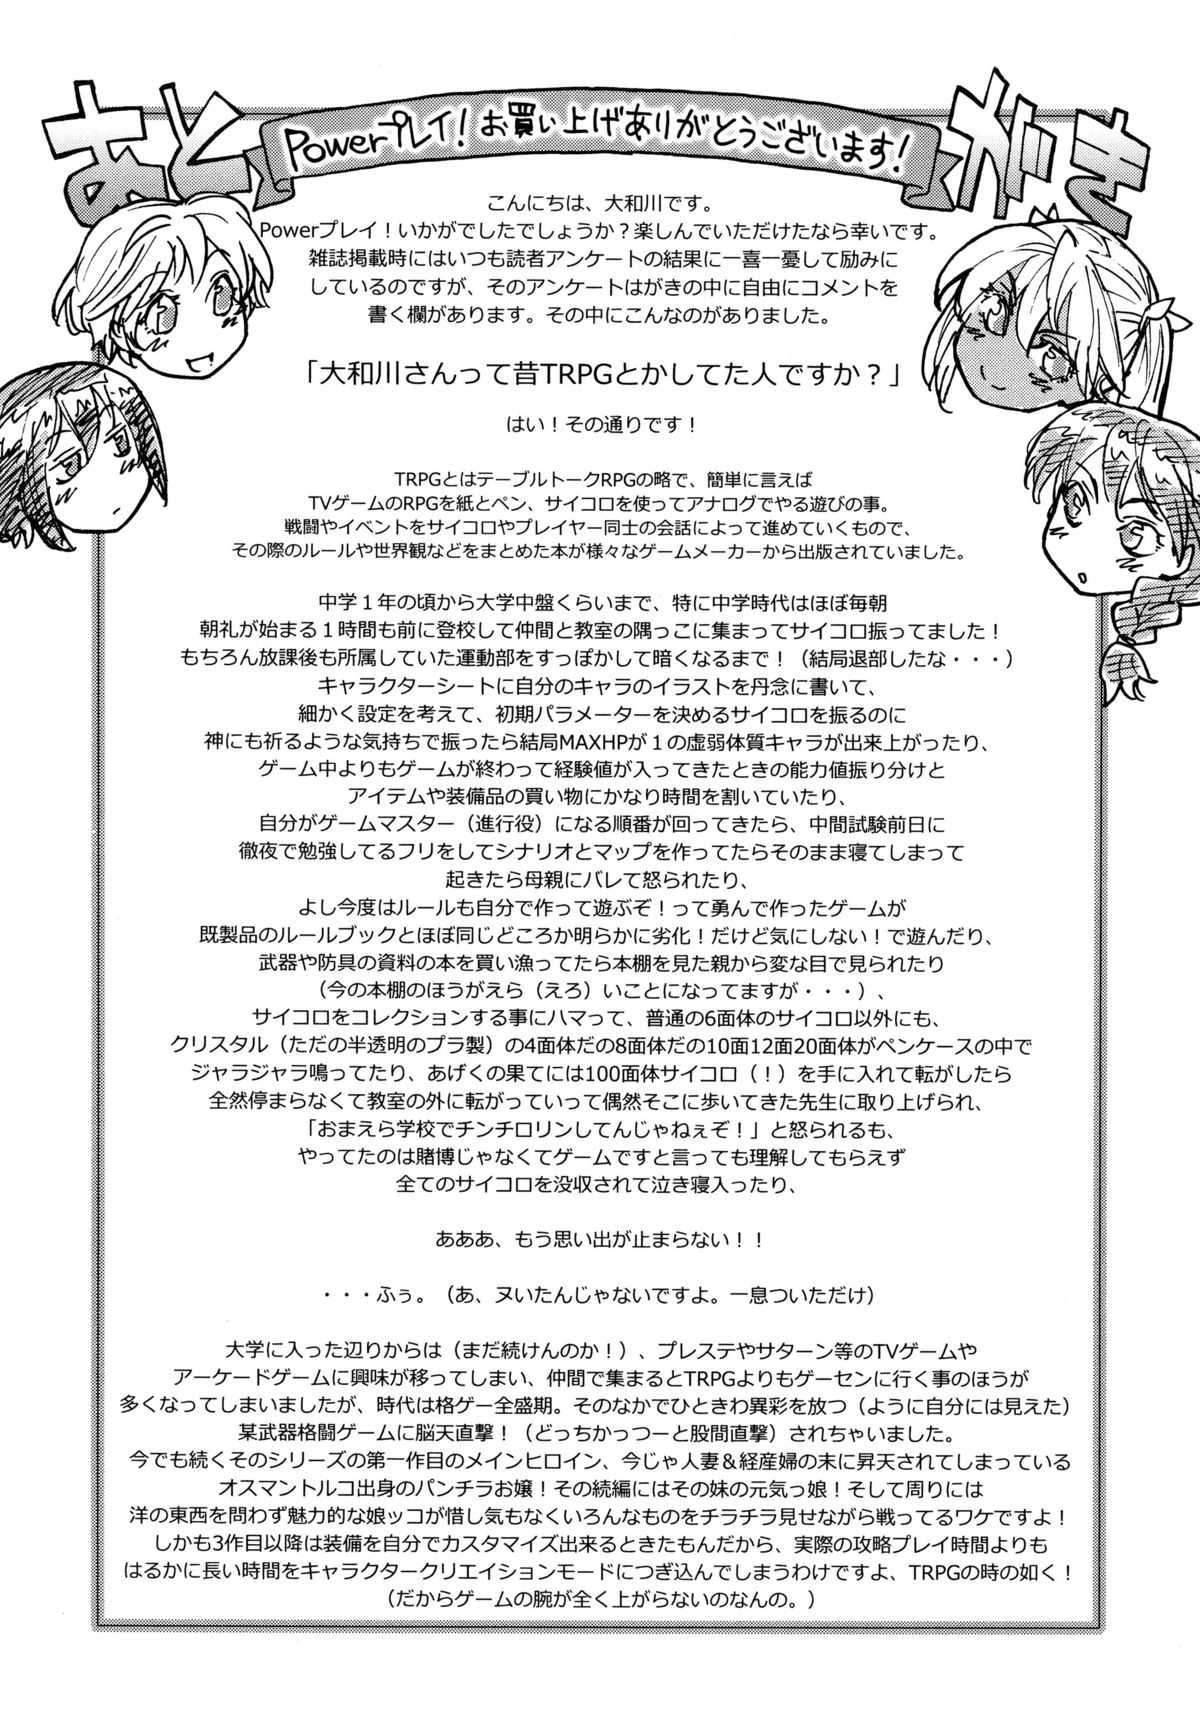 [Yamatogawa] Power Play! [2012-03-10] [大和川] Power プレイ！[2012-03-10]